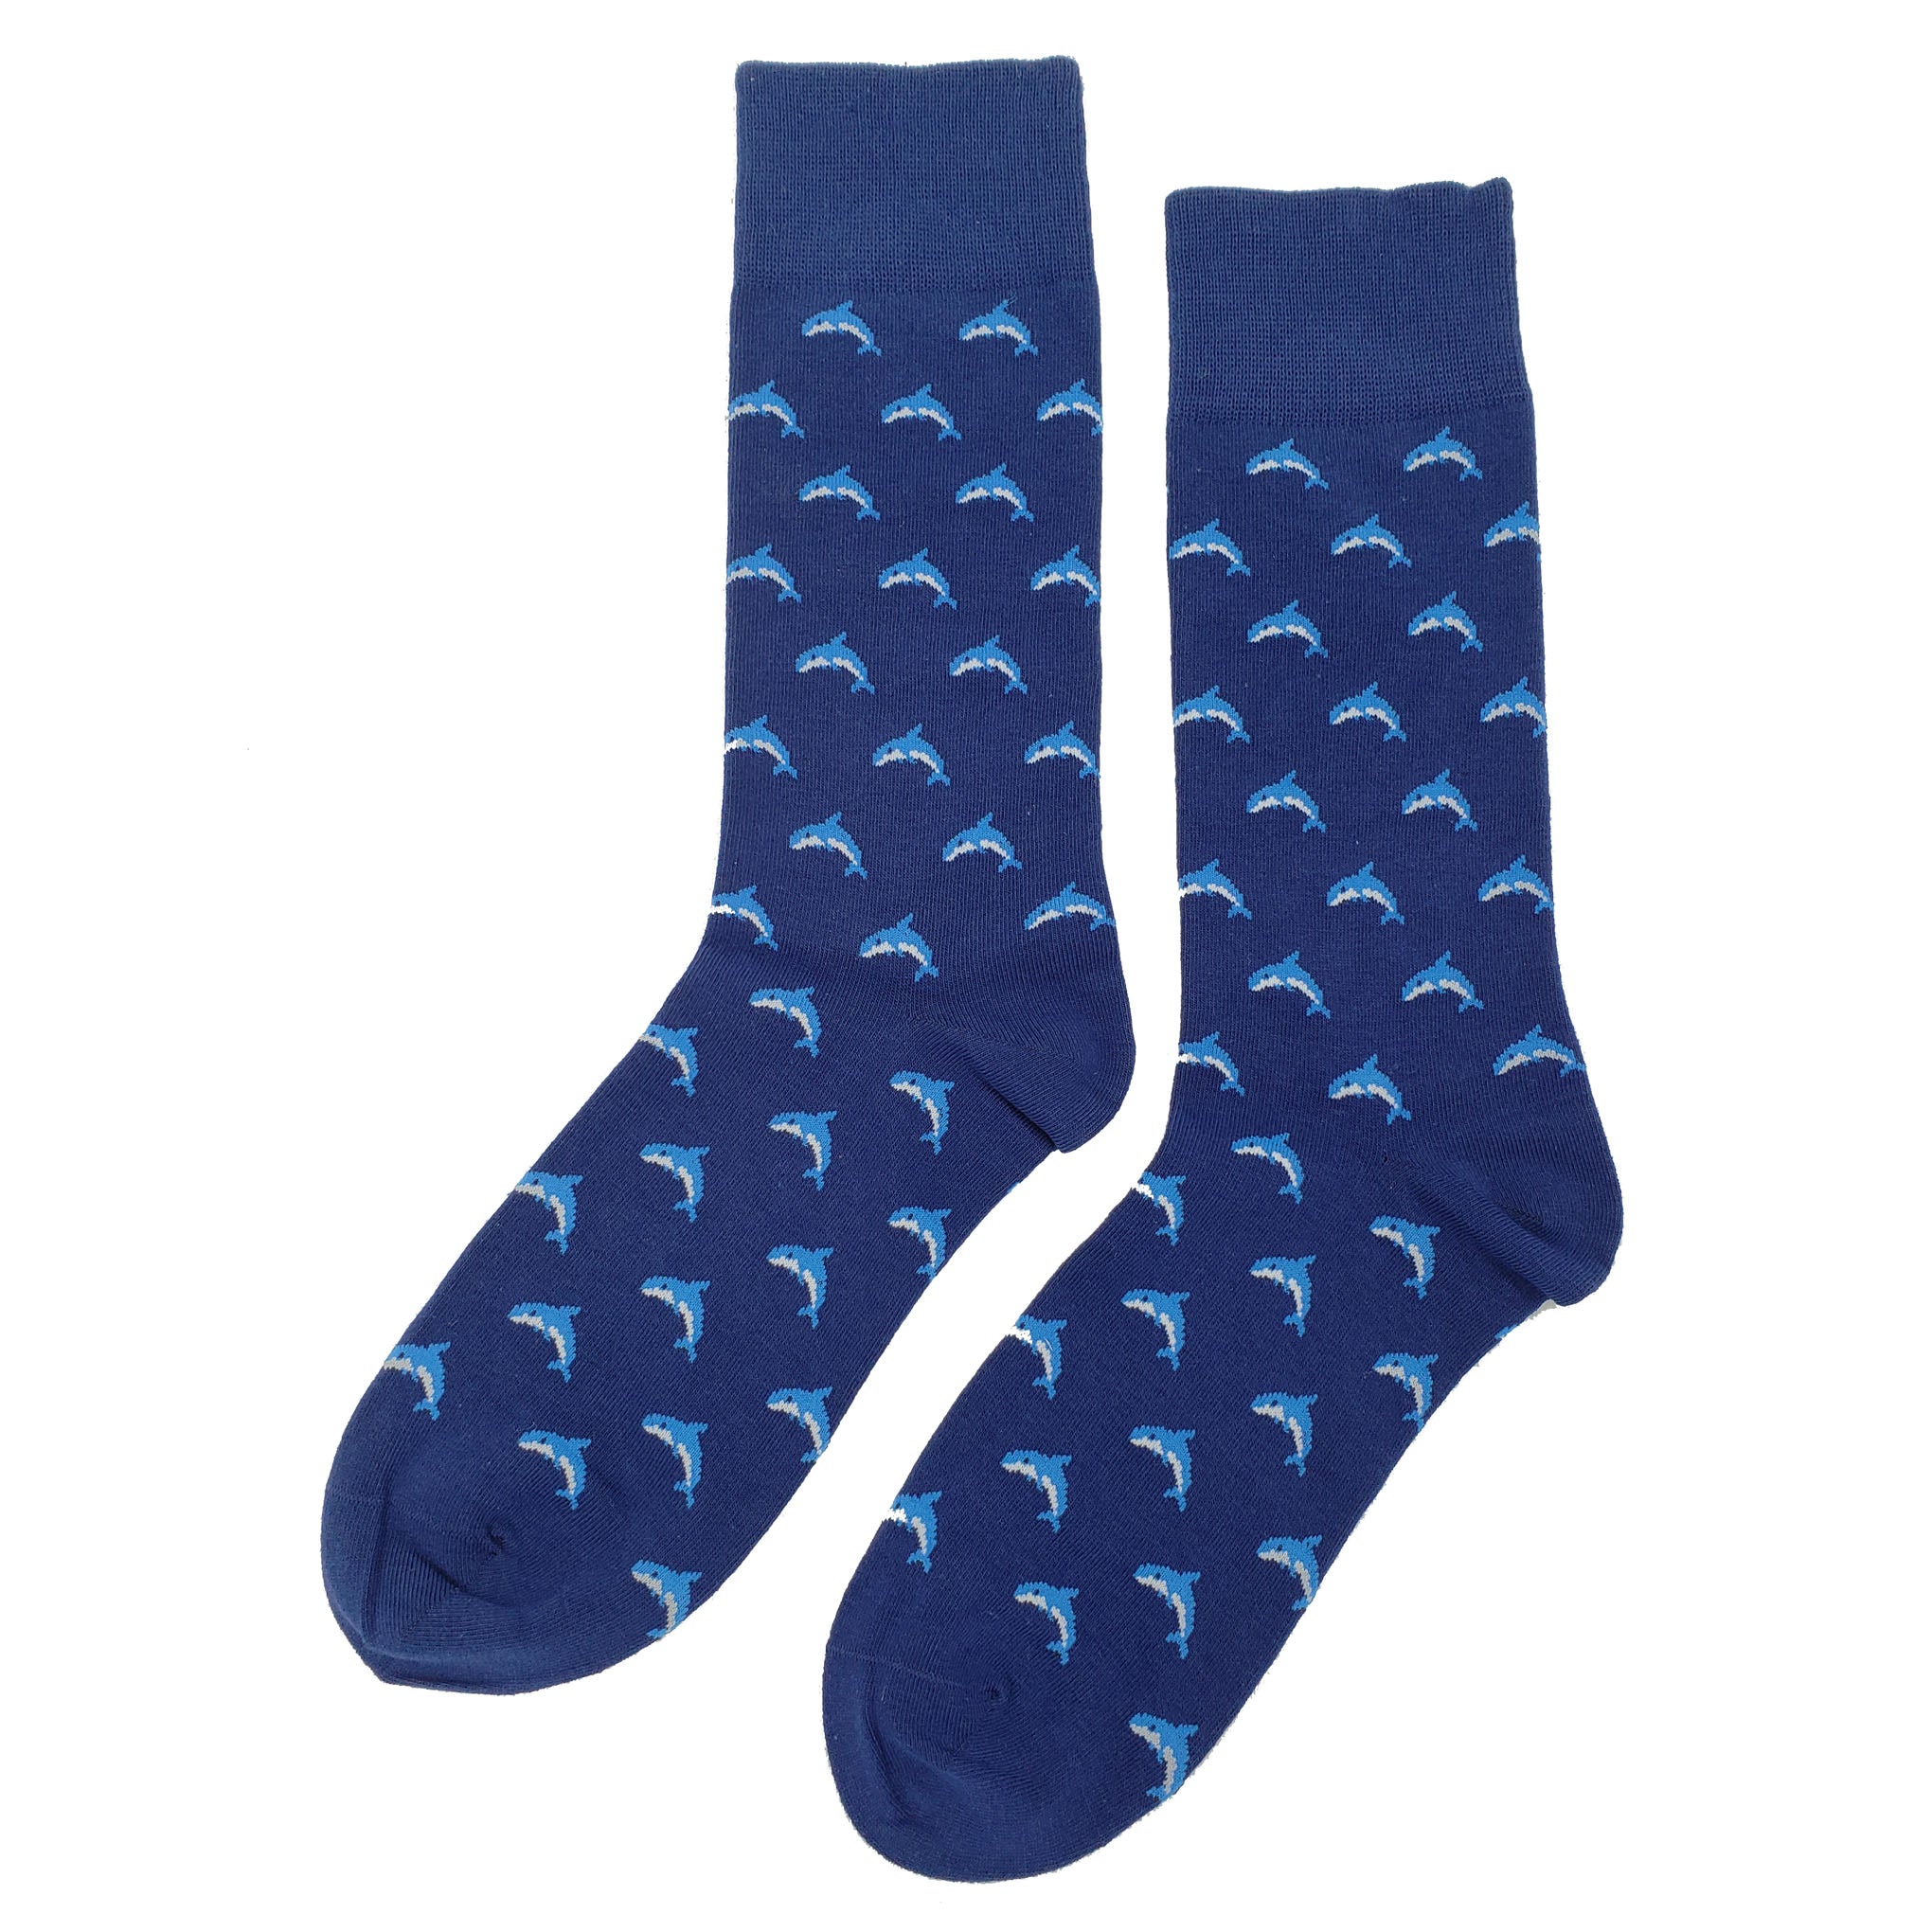 Small Dolphin Socks - Fun and Crazy Socks at Sockfly.com